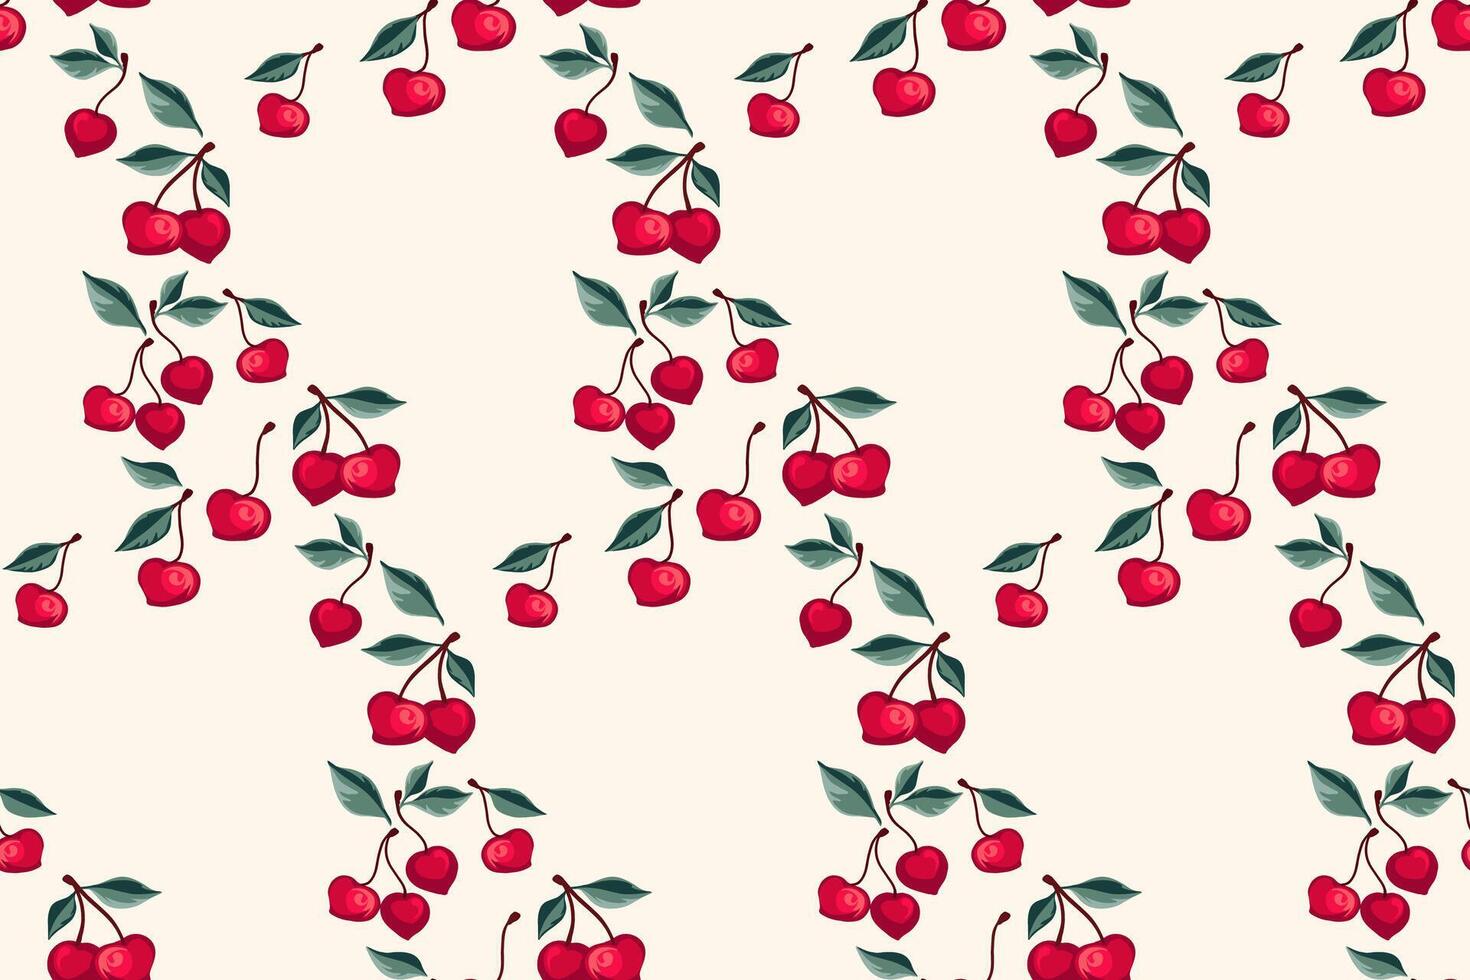 sömlös konstnärlig stiliserade körsbär mönster. sommar bär, frukter, löv, bakgrund. vektor hand dragen abstrakt, enkel körsbär. design prydnad för tyg, interiör dekor, textil, tapet